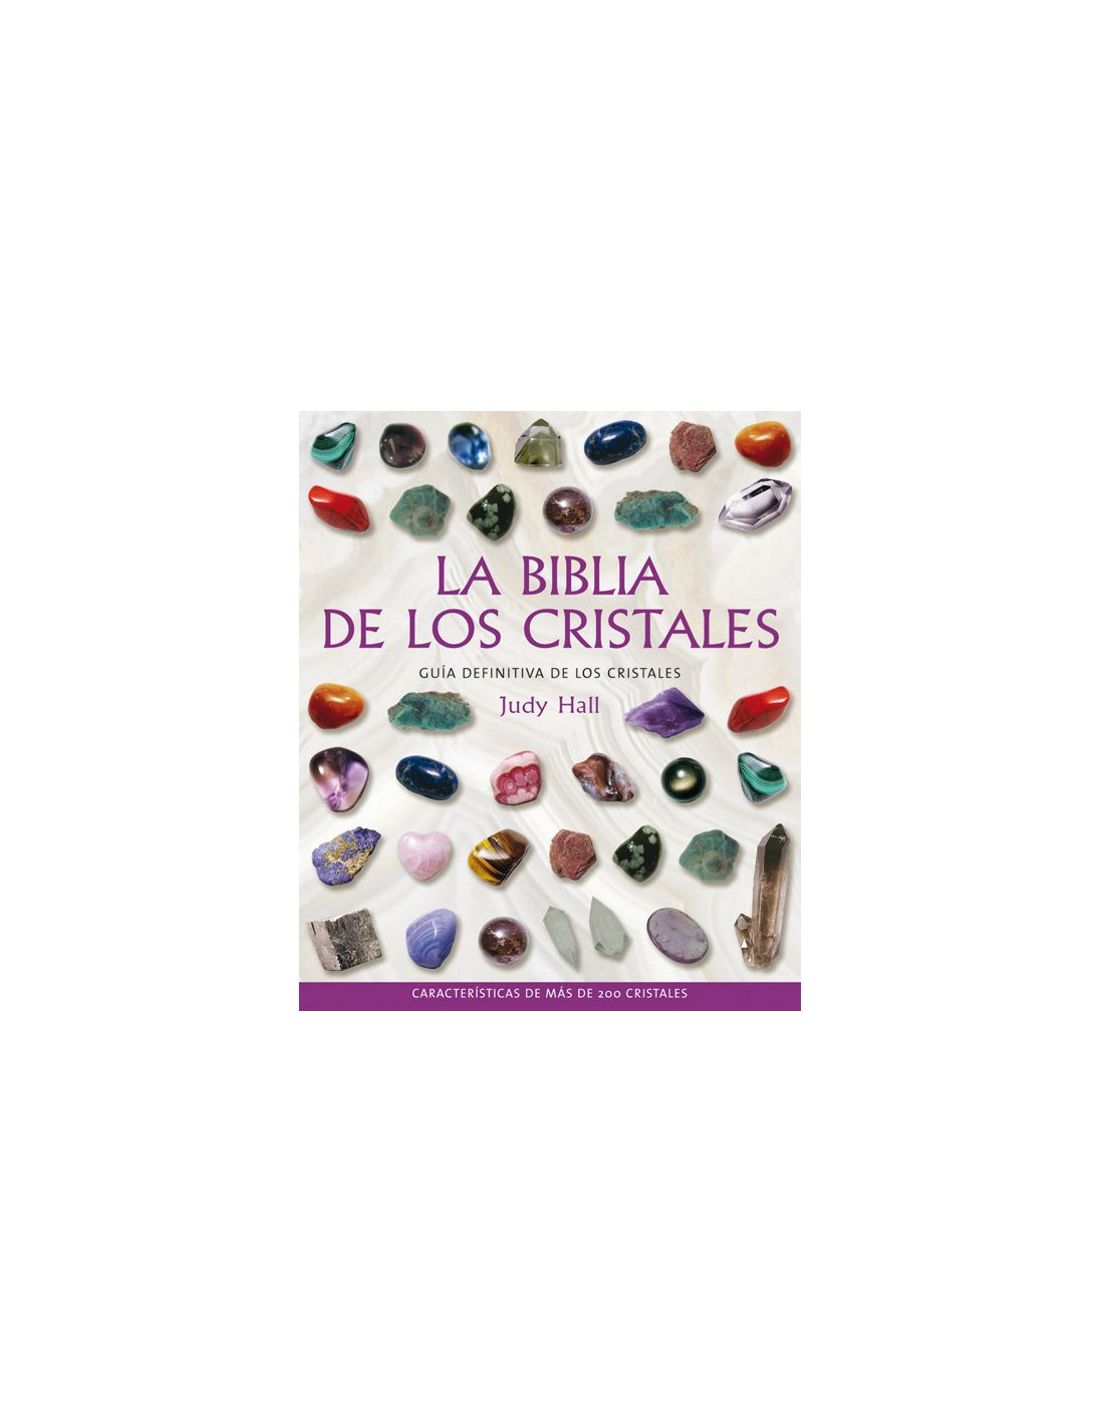 La Biblia De Los Cristales Vol 1 - Judy Hall - Gaia